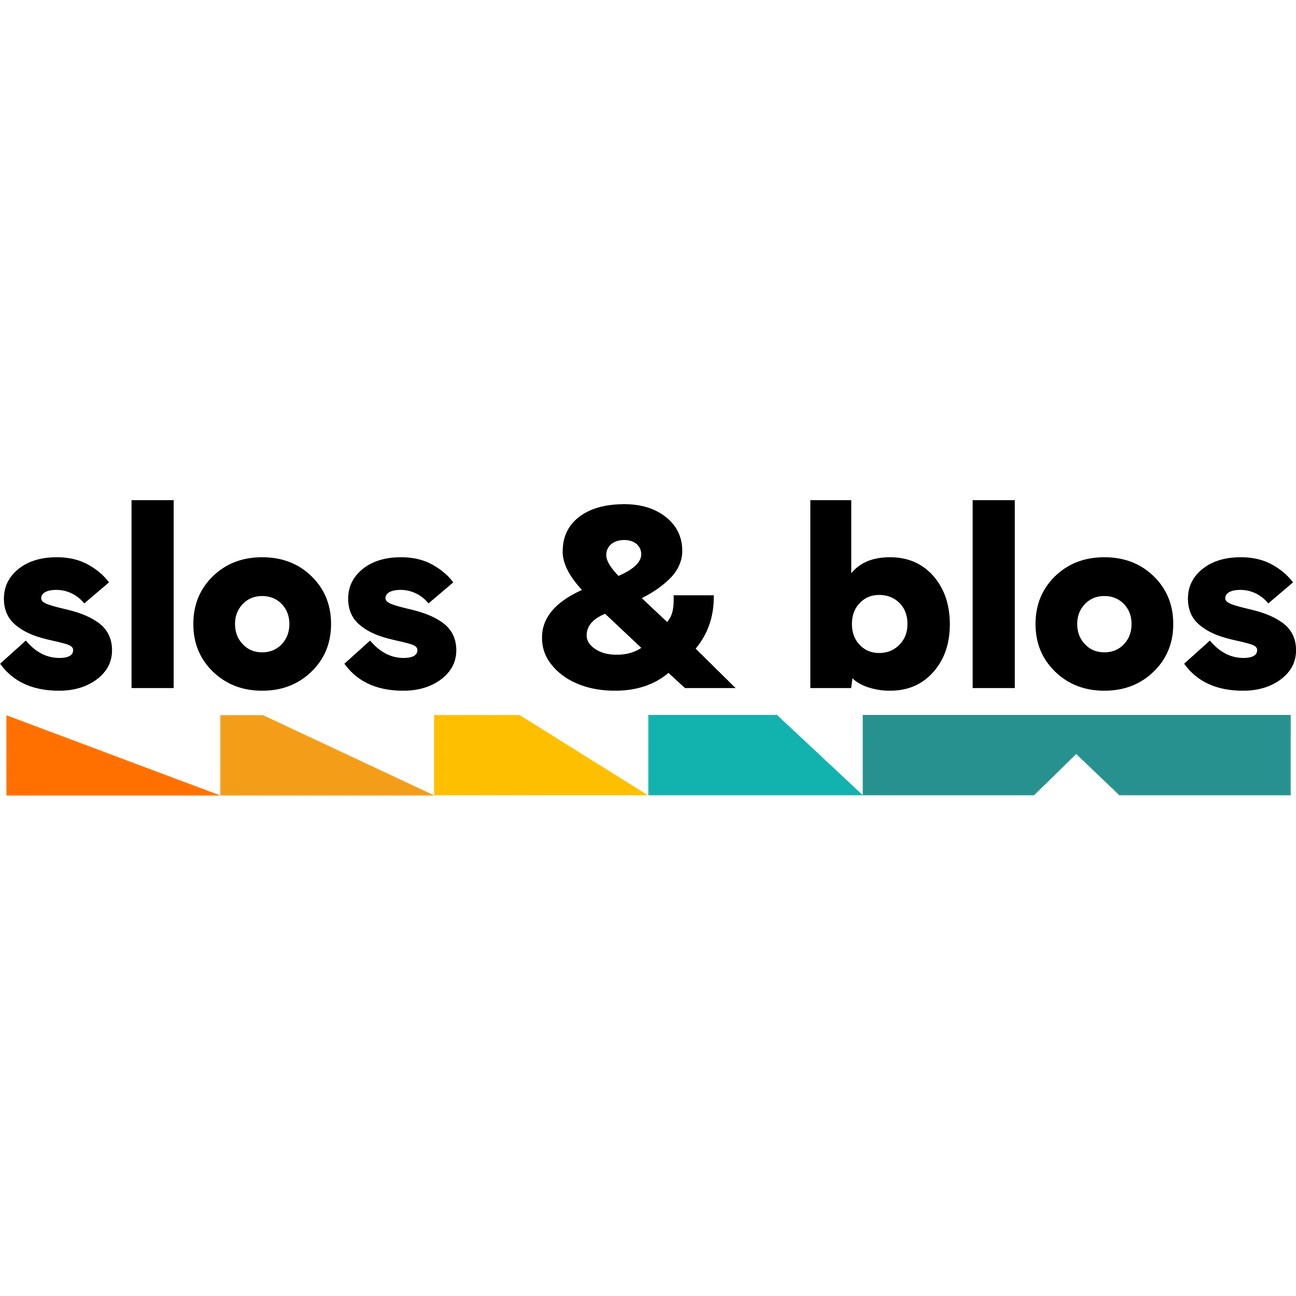 Slos & Blos 